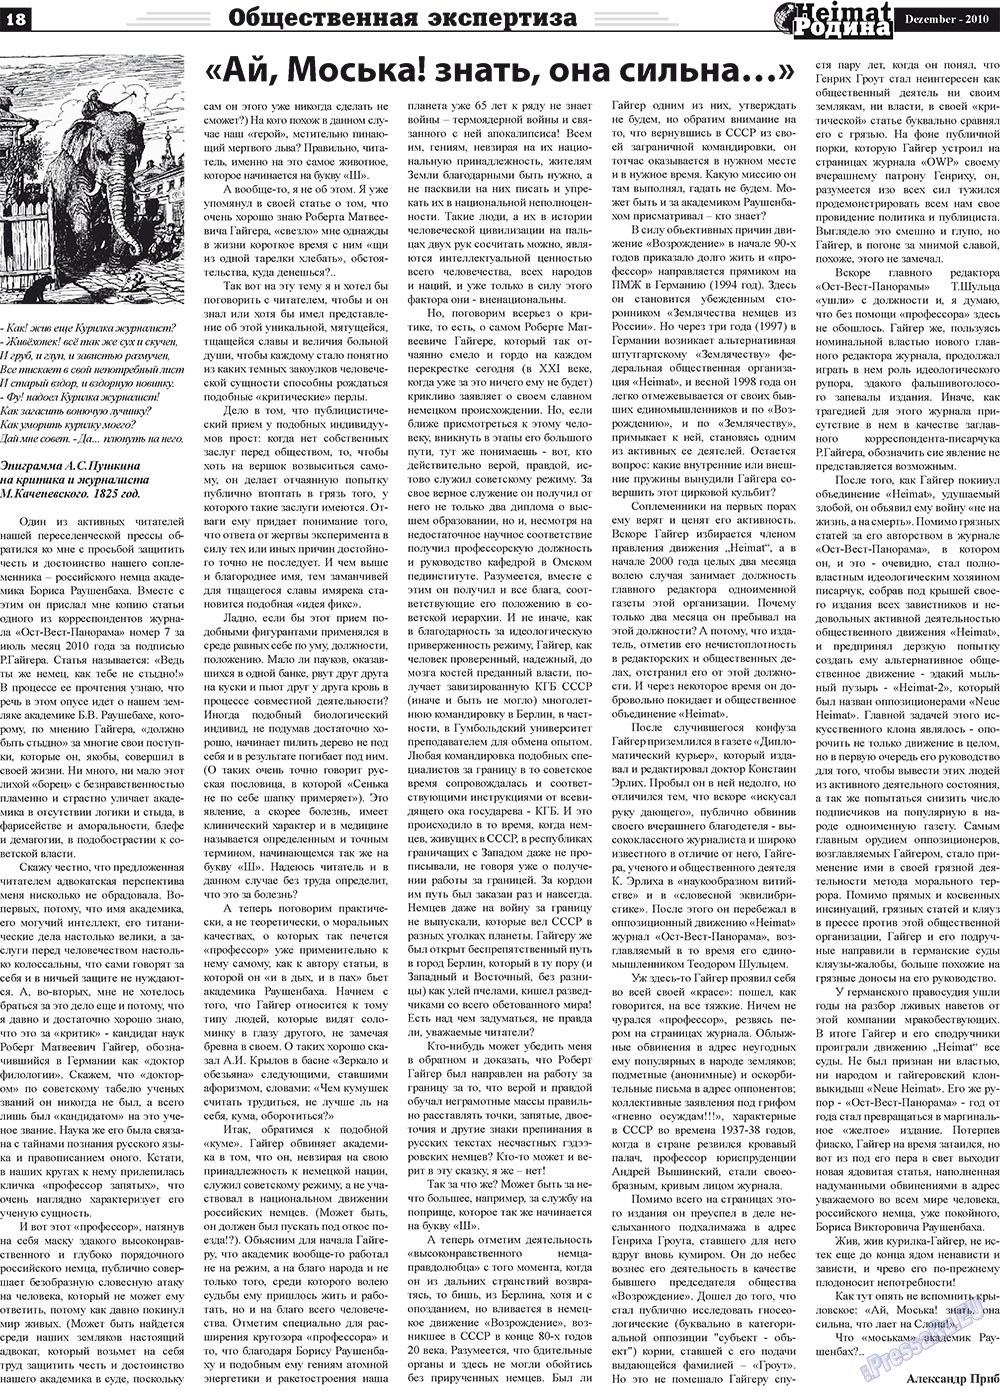 Heimat-Родина (Zeitung). 2010 Jahr, Ausgabe 12, Seite 18